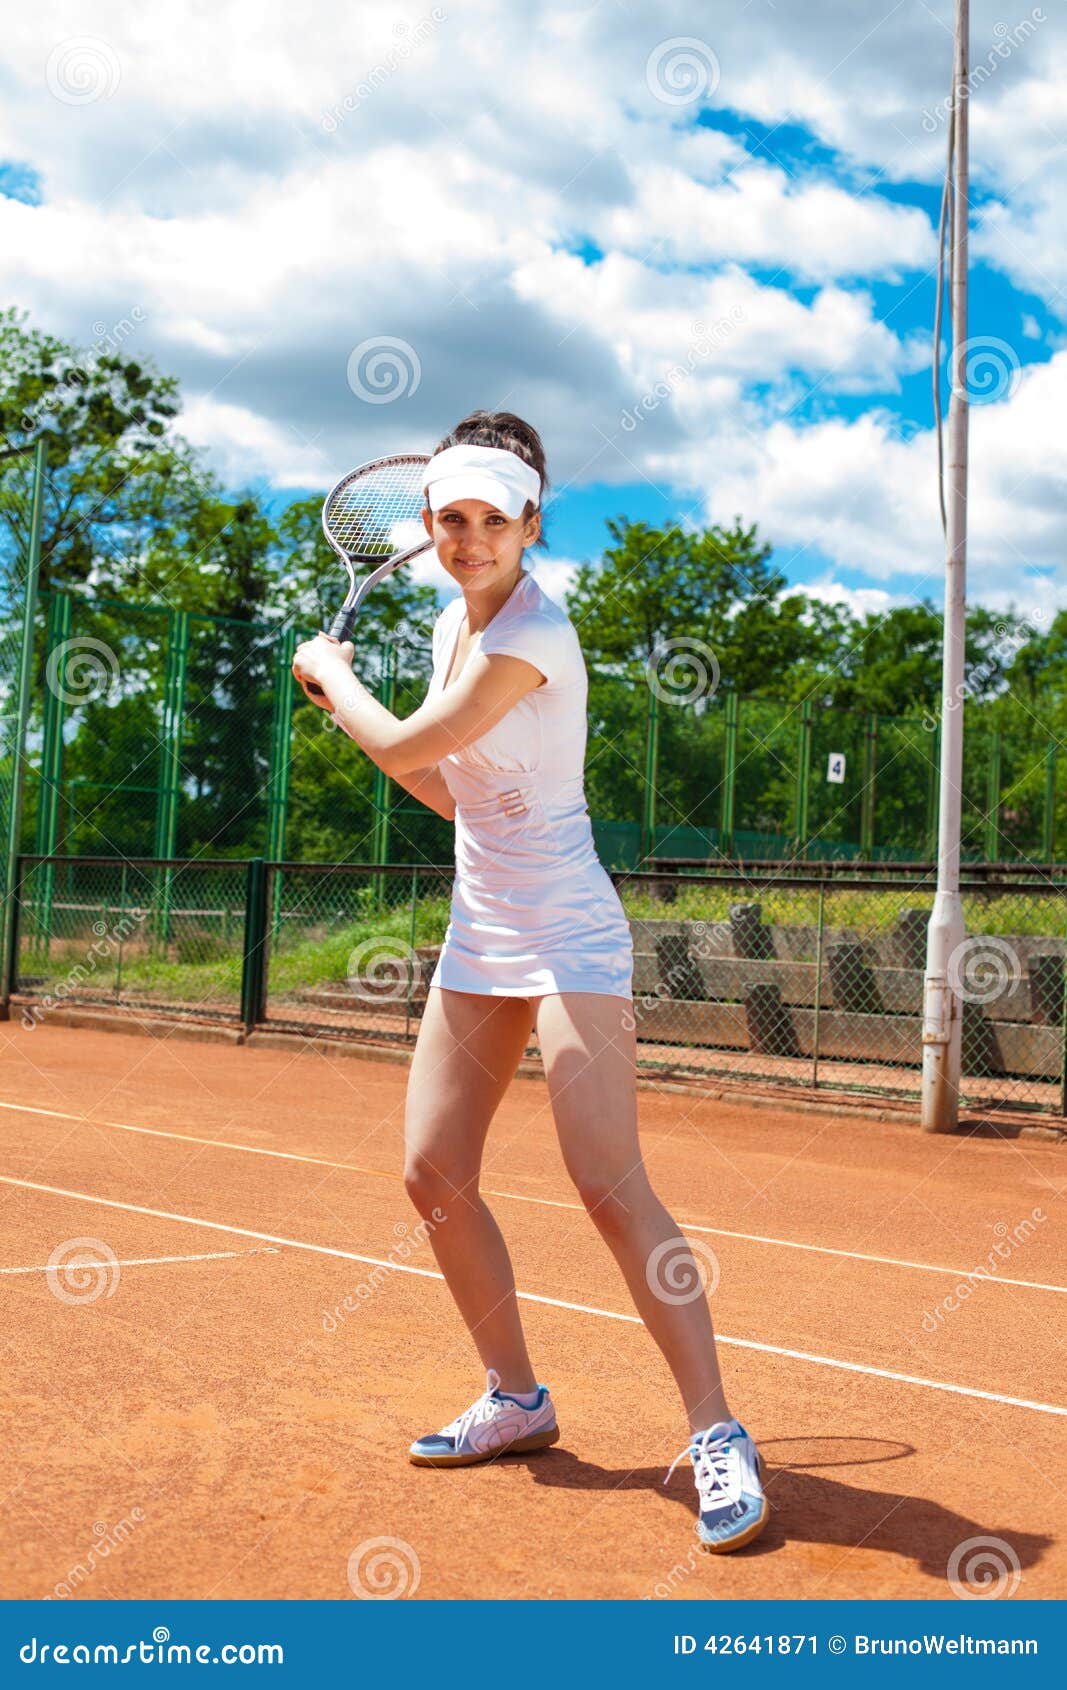 打网球的美女图片素材-编号27005253-图行天下